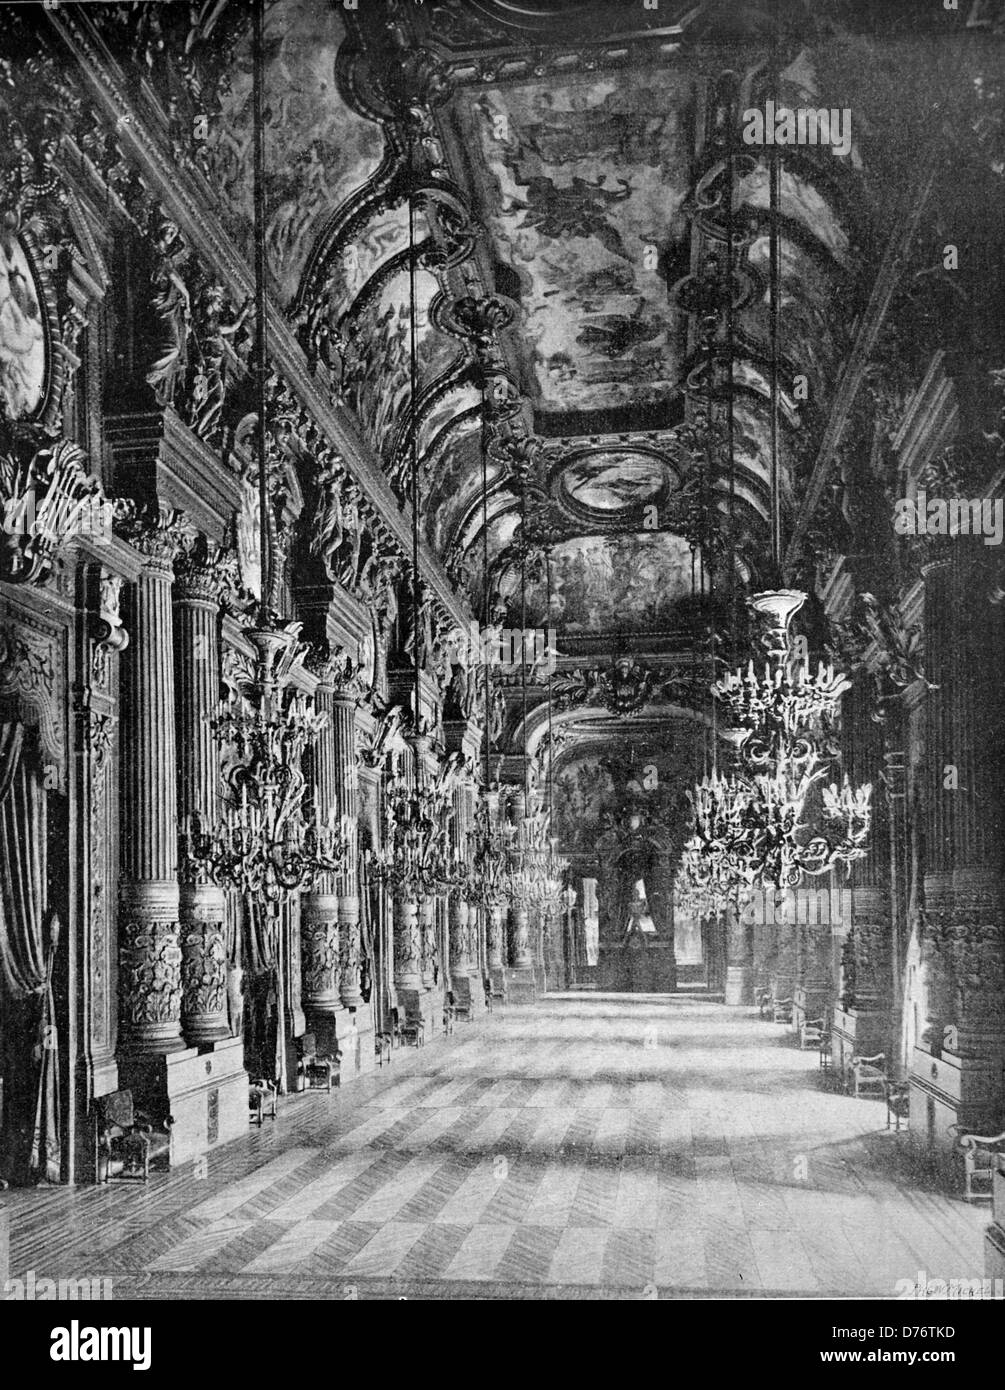 Début d'Autotype le foyer de l'Opéra de Paris, Paris, France, 1880 Banque D'Images